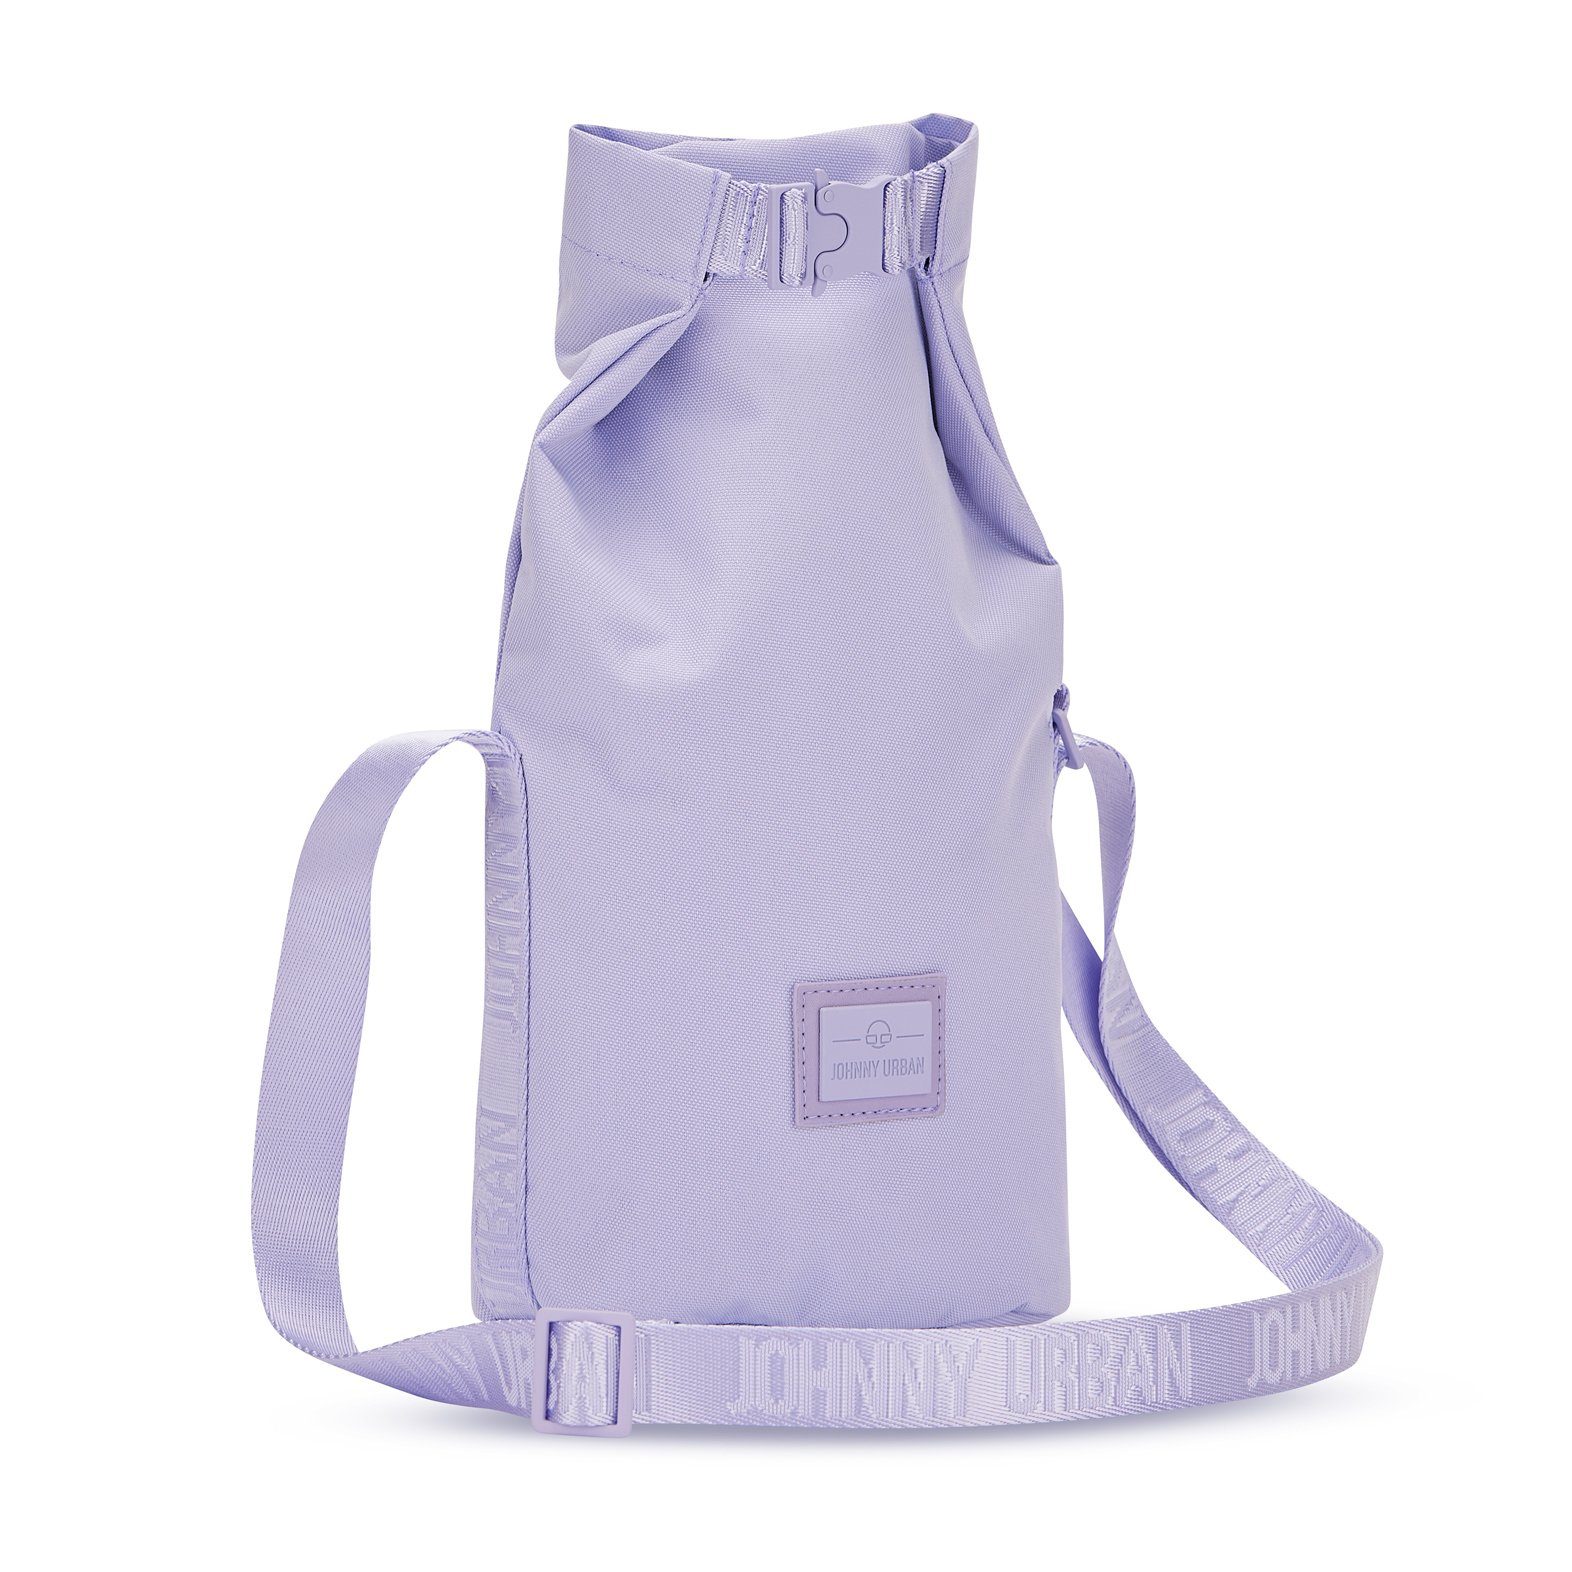 Damen, Handtasche Umhängetasche, Lilac Johnny Handtasche Stylische Wasserabweisend RUE Urban Flexible Größe,